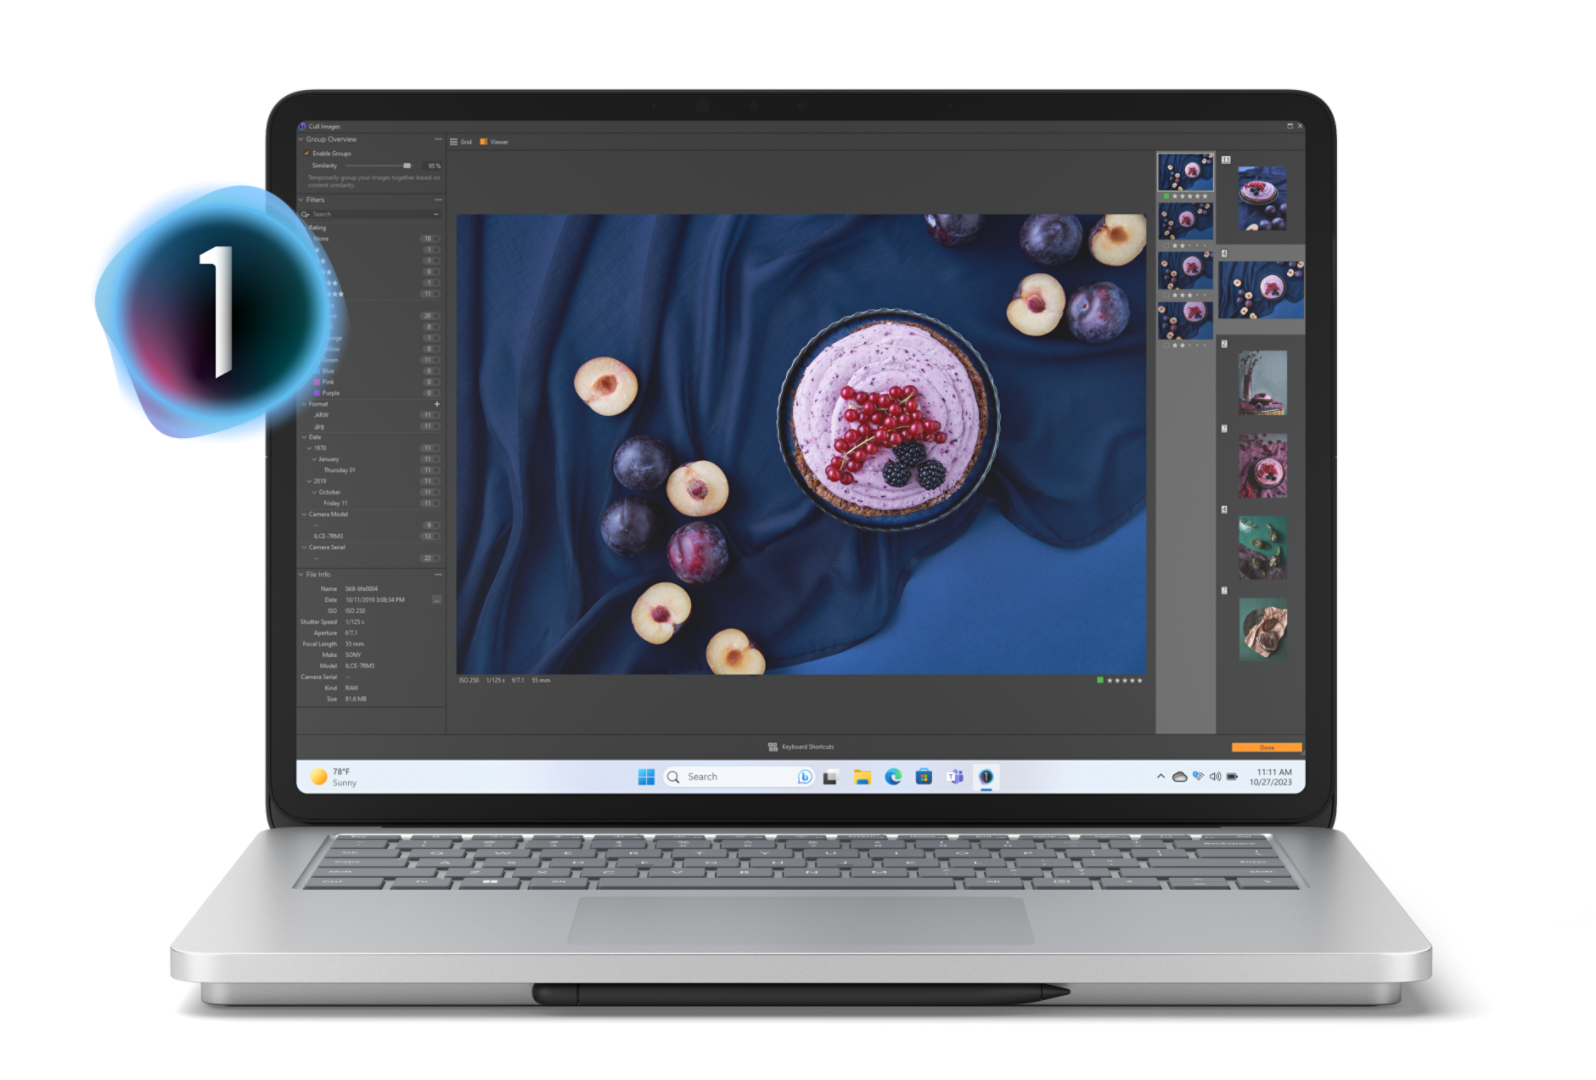 Surface Laptop Studio 2 die een fruitvlaai tonen met daarnaast rijpe pruimen op een donkerblauw tafelkleed op het scherm van het apparaat met Capture One menu-items die uit het scherm springen.